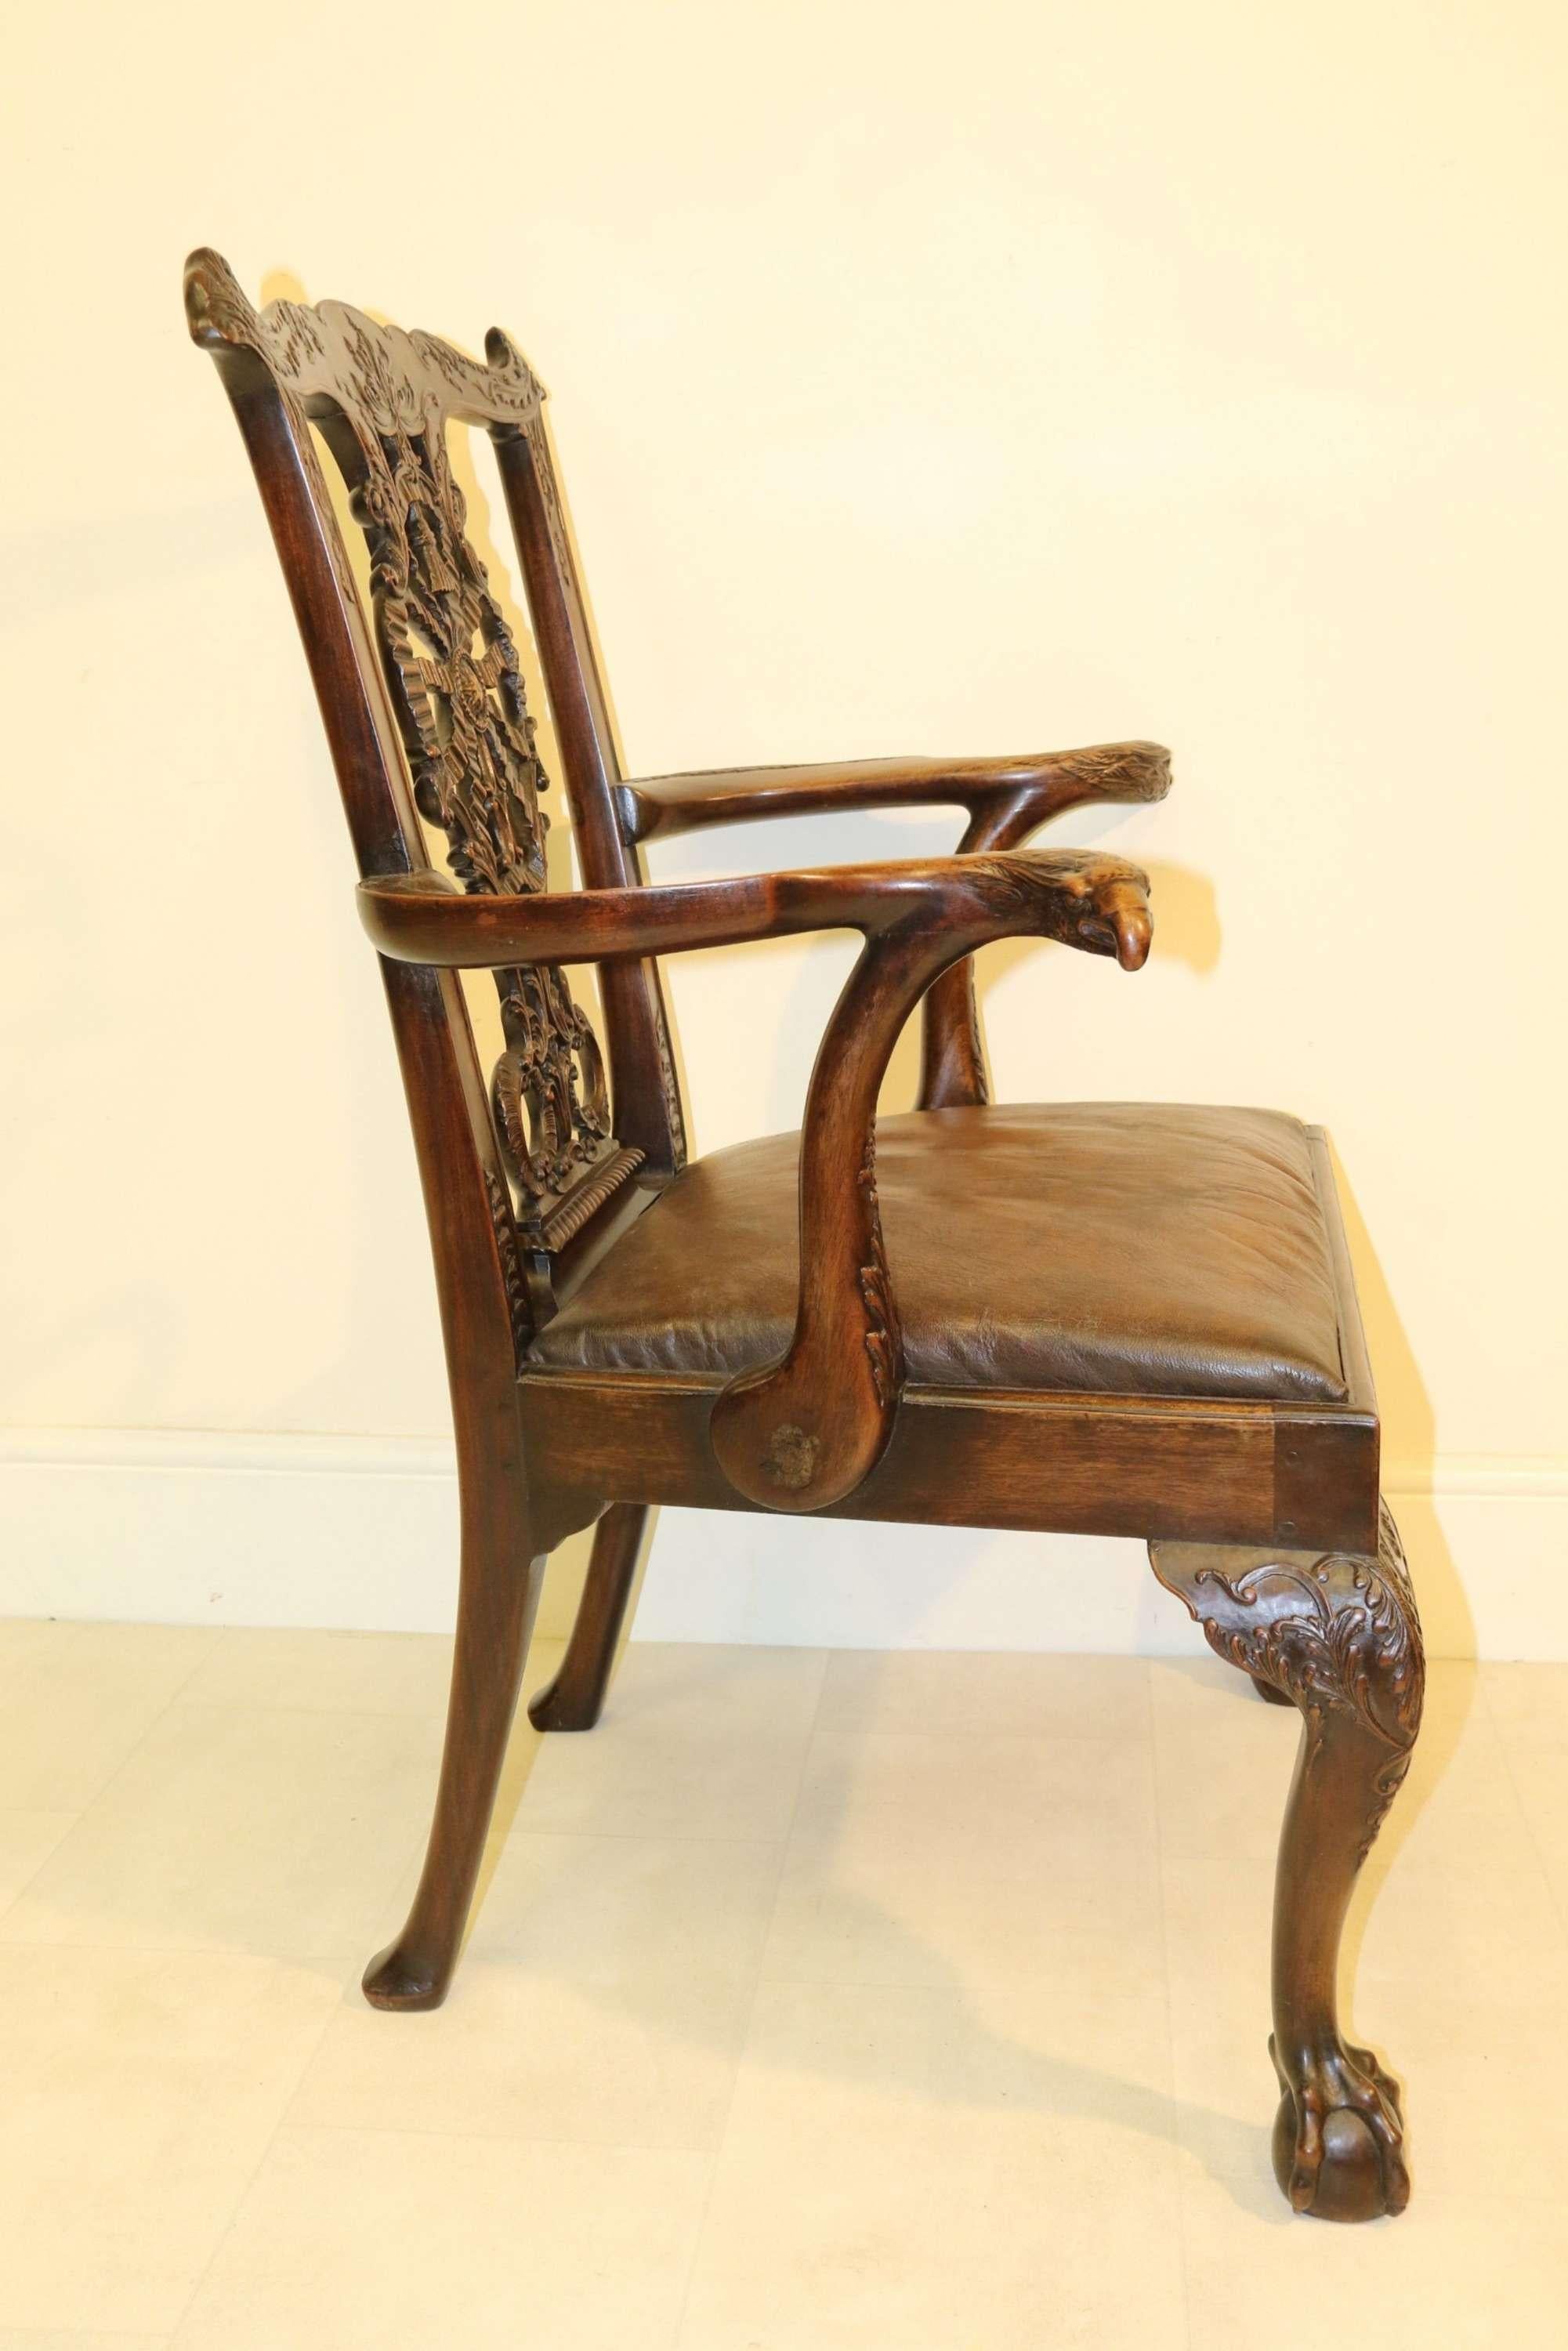 Fauteuil raffiné de style Chippendale du 19ème siècle

Ce superbe exemple de fauteuil ouvert Chippendale de qualité supérieure, datant du XIXe siècle, est fabriqué en acajou cubain riche et dense. La qualité de fabrication des détails sculptés de